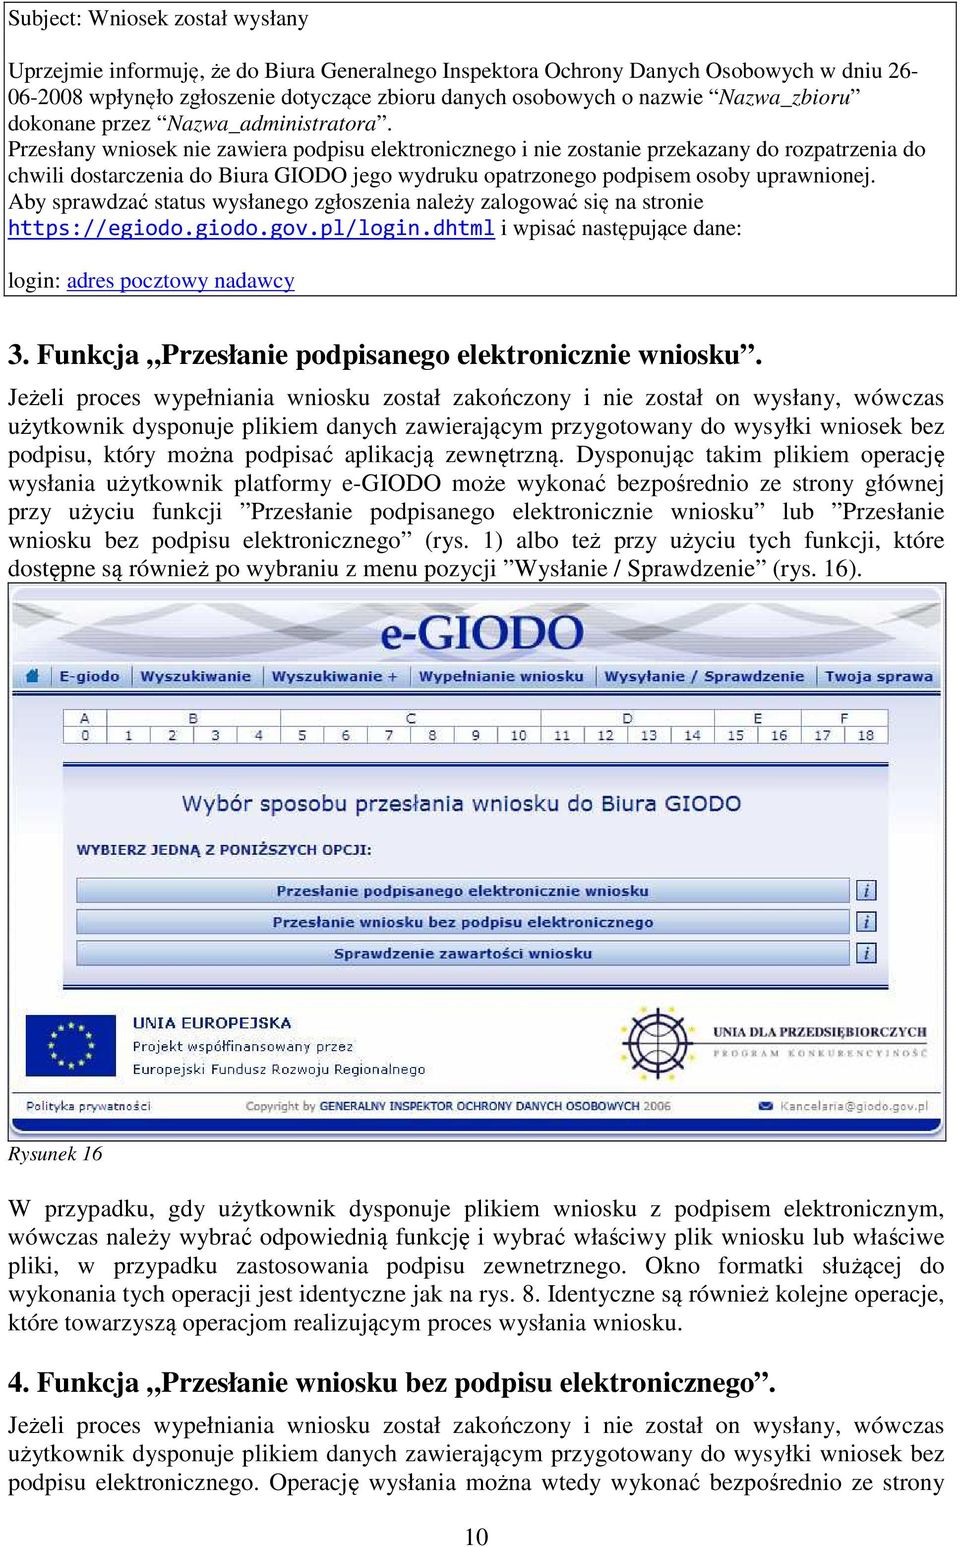 Przesłany wniosek nie zawiera podpisu elektronicznego i nie zostanie przekazany do rozpatrzenia do chwili dostarczenia do Biura GIODO jego wydruku opatrzonego podpisem osoby uprawnionej.